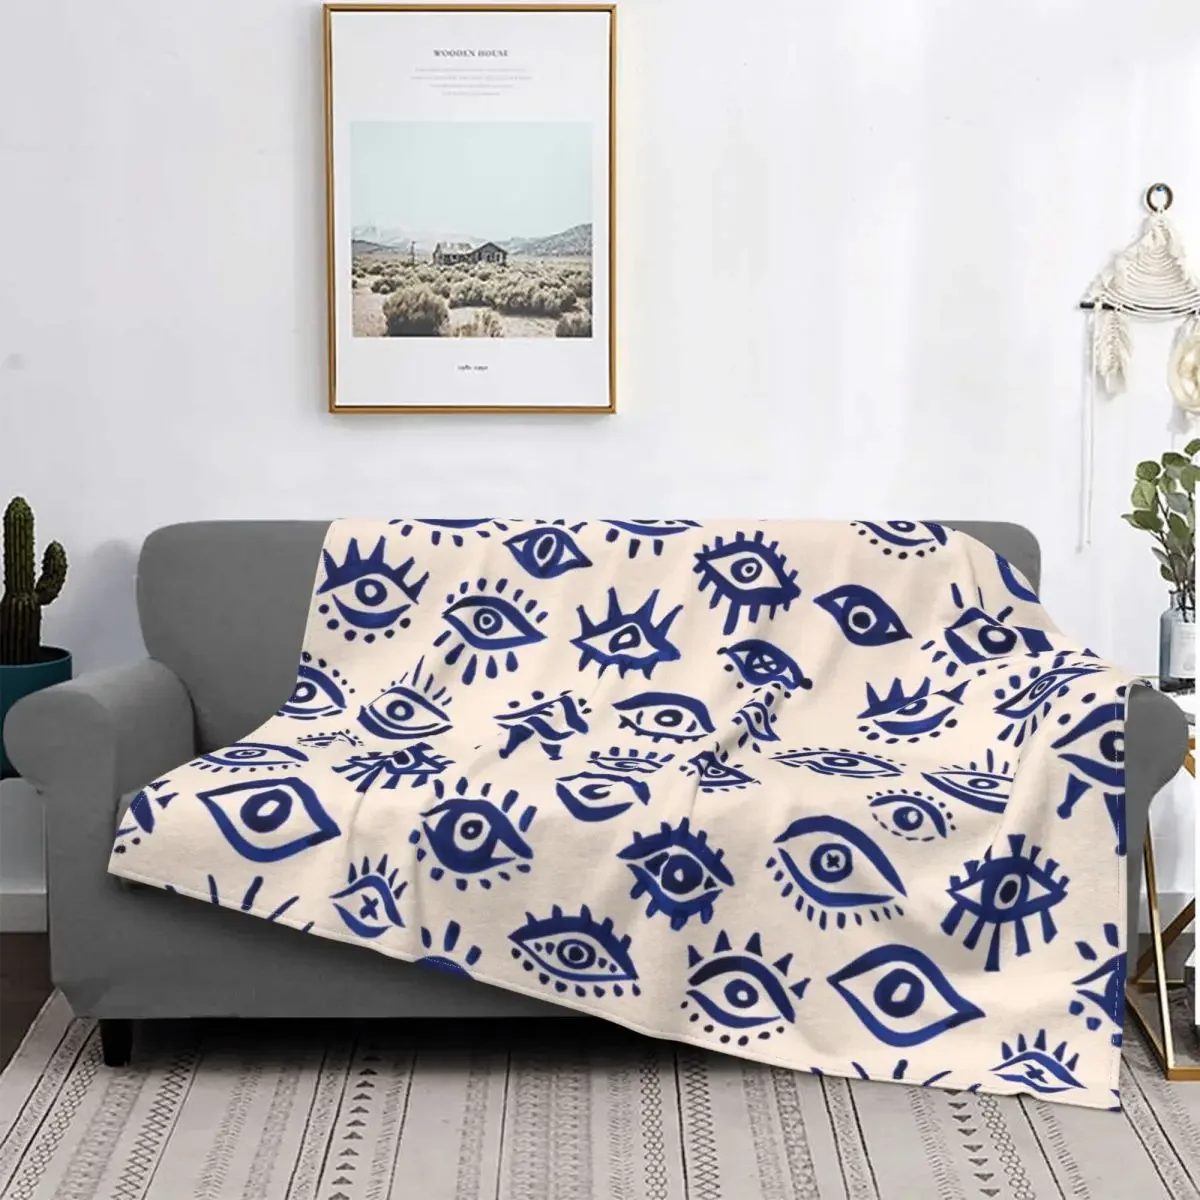 

Одеяло Мистик Айз темно-синее, Фланелевое украшение от сглаза, многофункциональное супер мягкое покрывало для дома и офиса